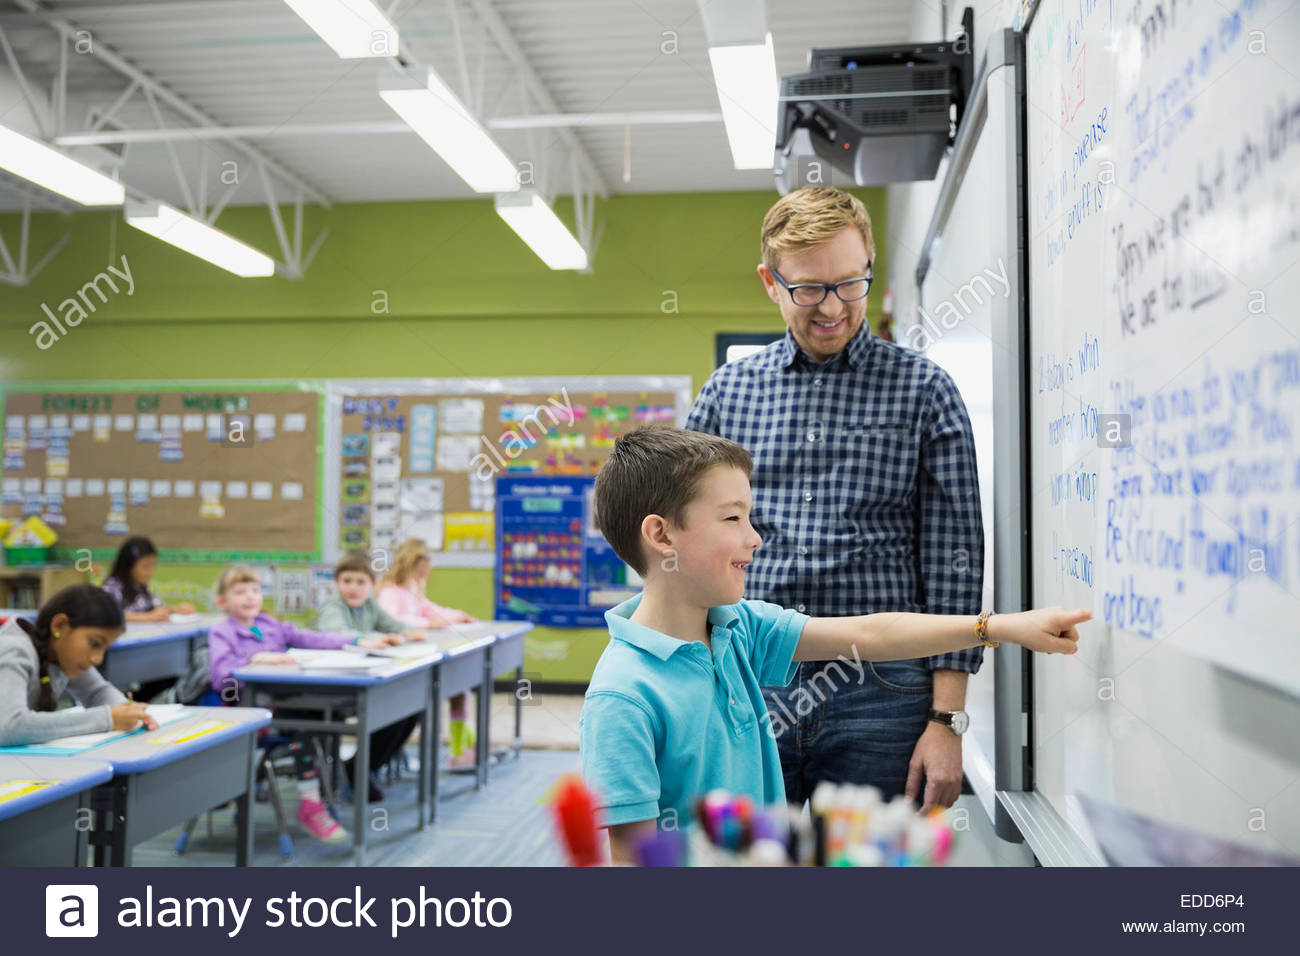 Lehrer Und Elementare Am Whiteboard Im Klassenzimmer Stockfotografie Alamy